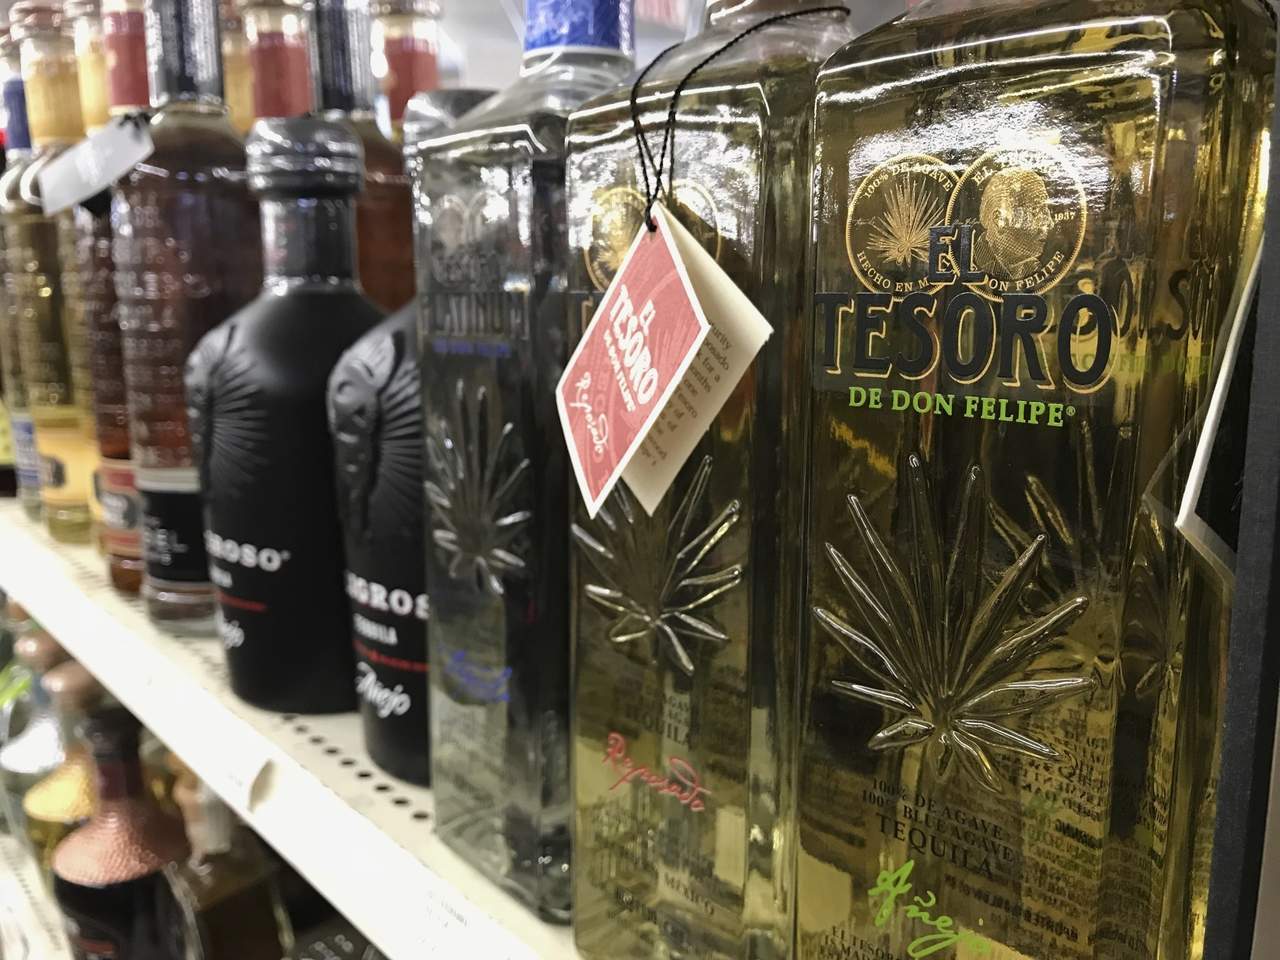 El directivo explicó que la proyección y demanda de esta bebida tradicional mexicana es cada vez más grande, los consumidores han aumentado su interés por conocer el producto, degustarlo y conocer sus características. (ARCHIVO)